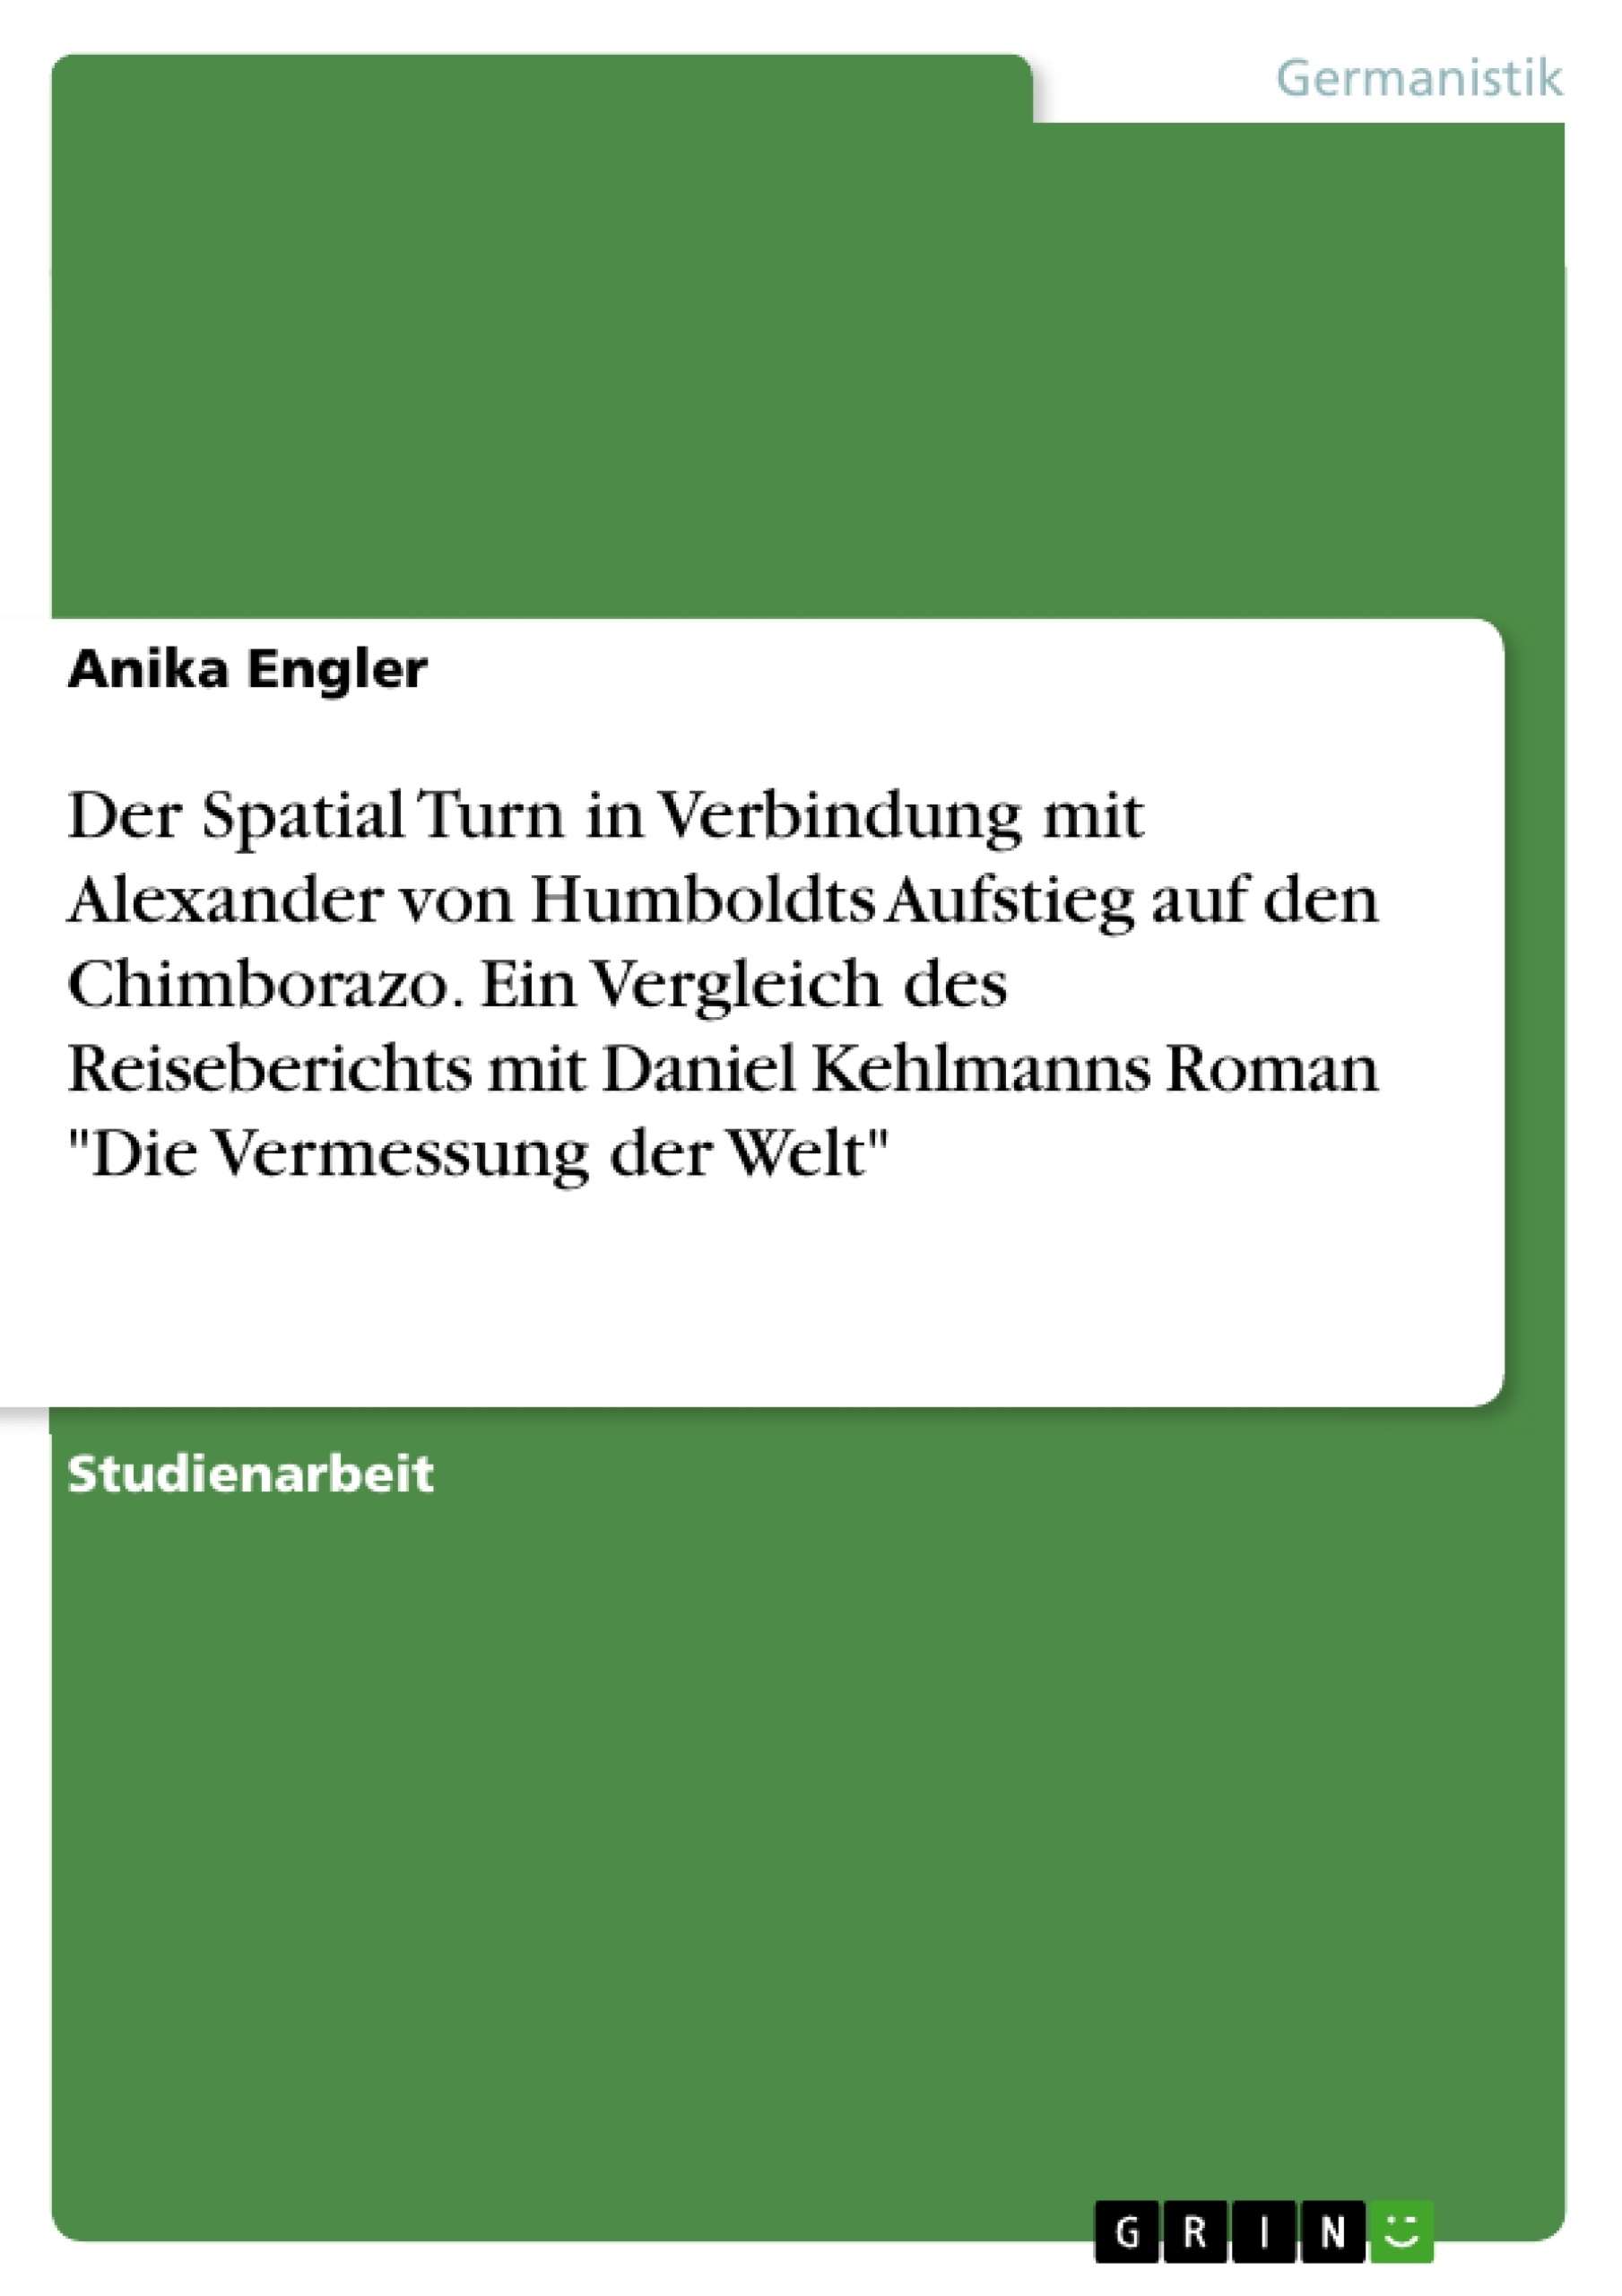 Título: Der Spatial Turn in Verbindung mit Alexander von Humboldts Aufstieg auf den Chimborazo. Ein Vergleich des Reiseberichts mit Daniel Kehlmanns Roman "Die Vermessung der Welt"